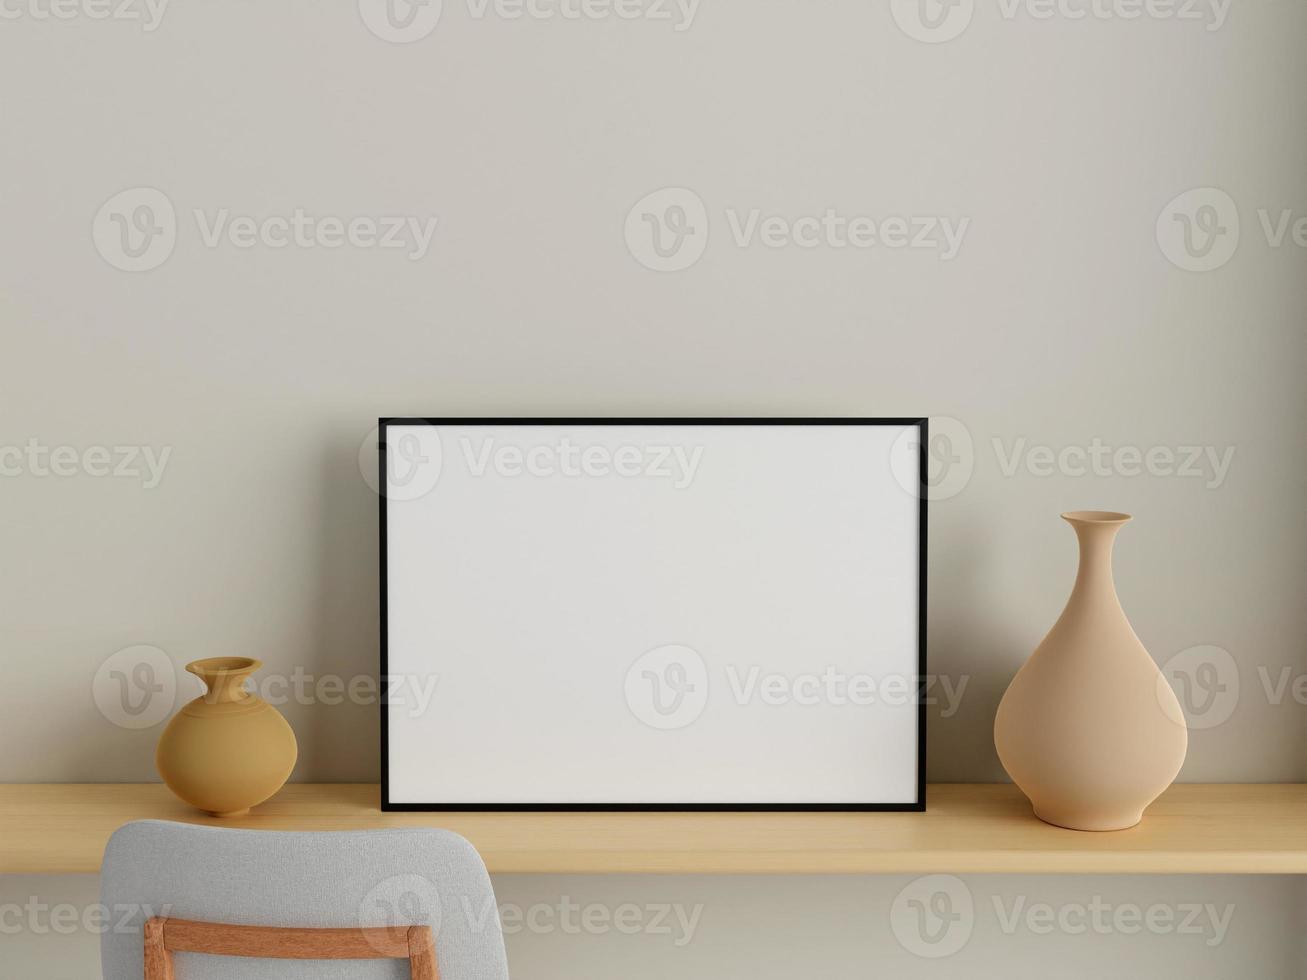 modernes und minimalistisches horizontales schwarzes plakat oder fotorahmenmodell an der wand im wohnzimmer. 3D-Rendering. foto